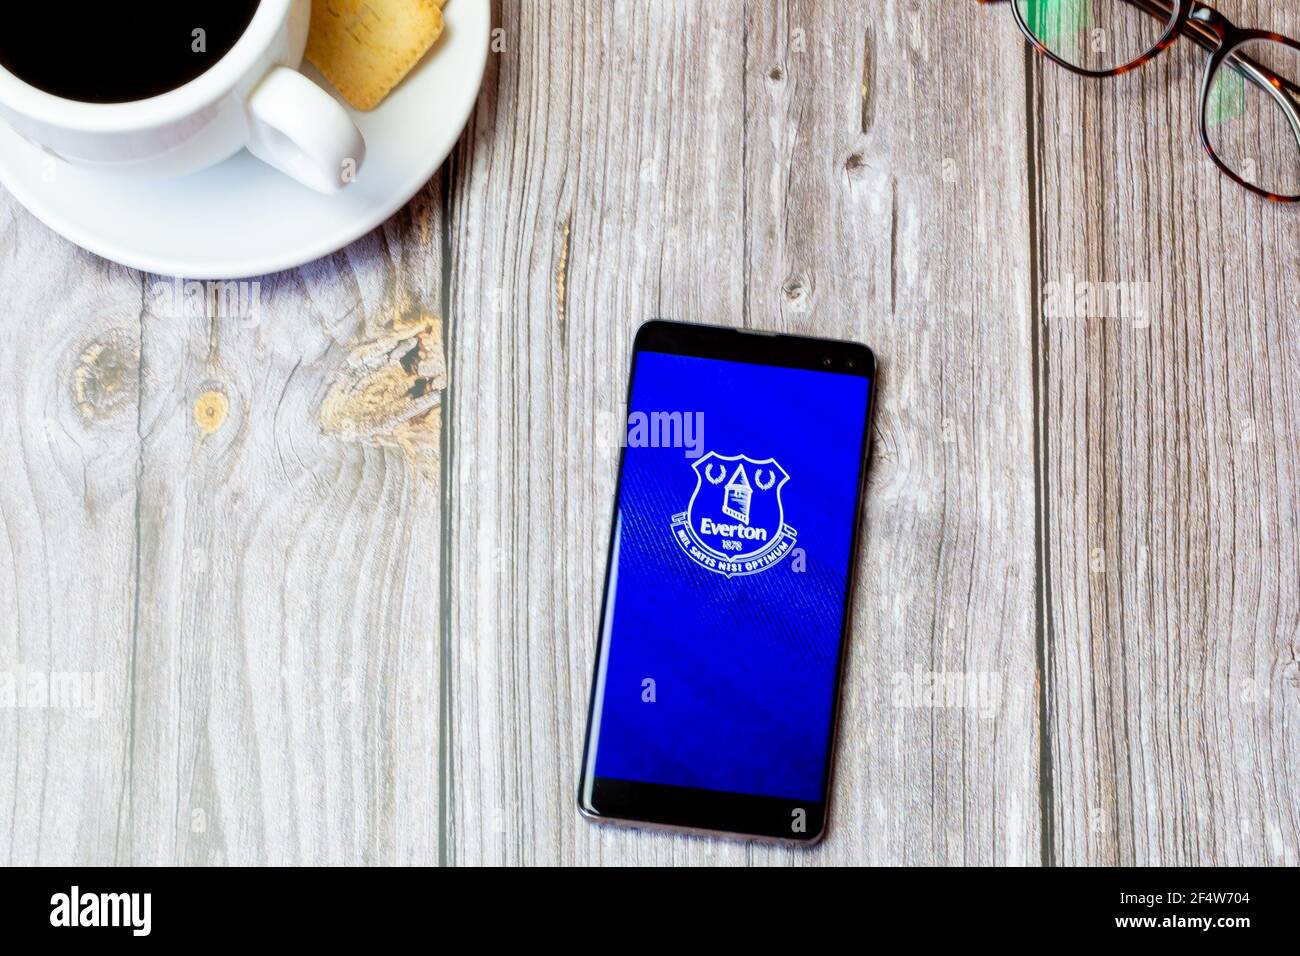 Un teléfono móvil o celular colocado sobre una madera Mesa con la aplicación Everton Football Club abierta en la pantalla Foto de stock